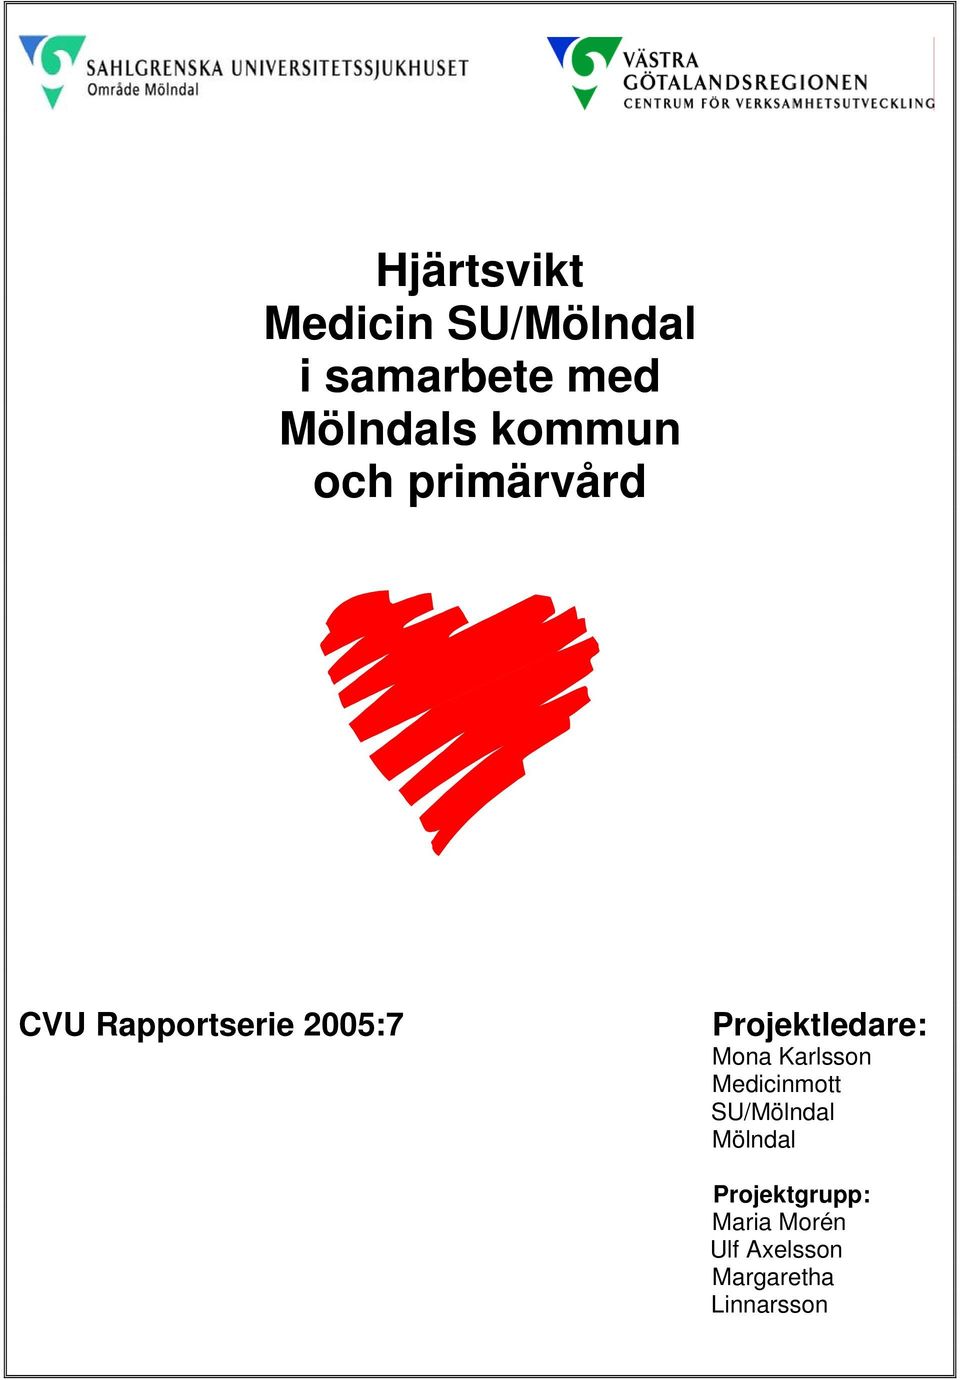 Projektledare: Mona Karlsson Medicinmott SU/Mölndal